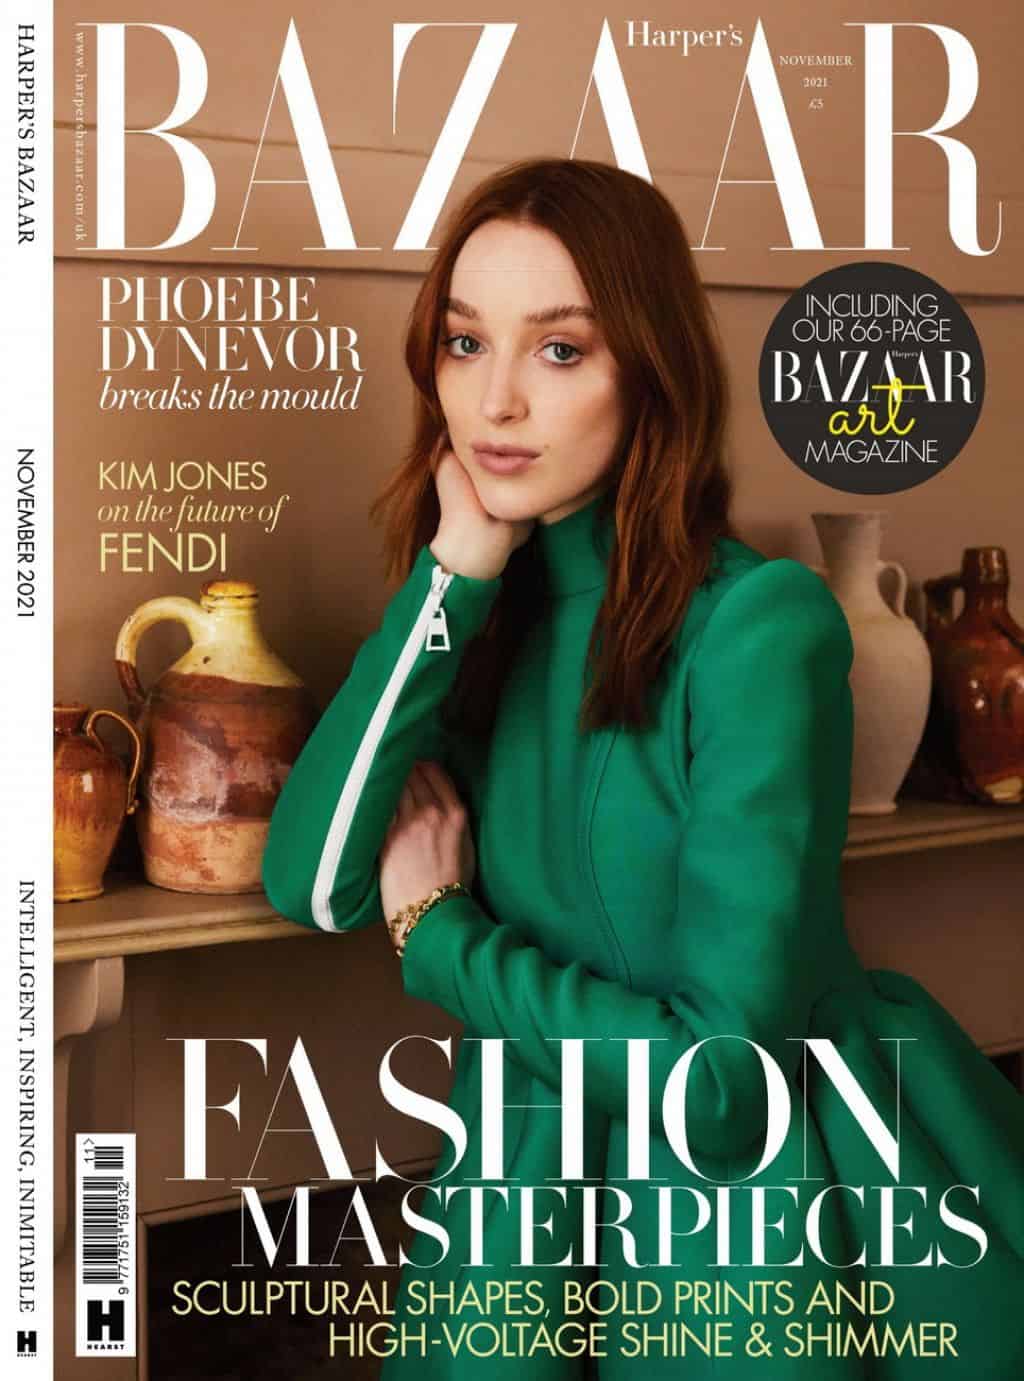 phoebe dynevor on the cover of harper s bazaar uk november 2021 issue 1